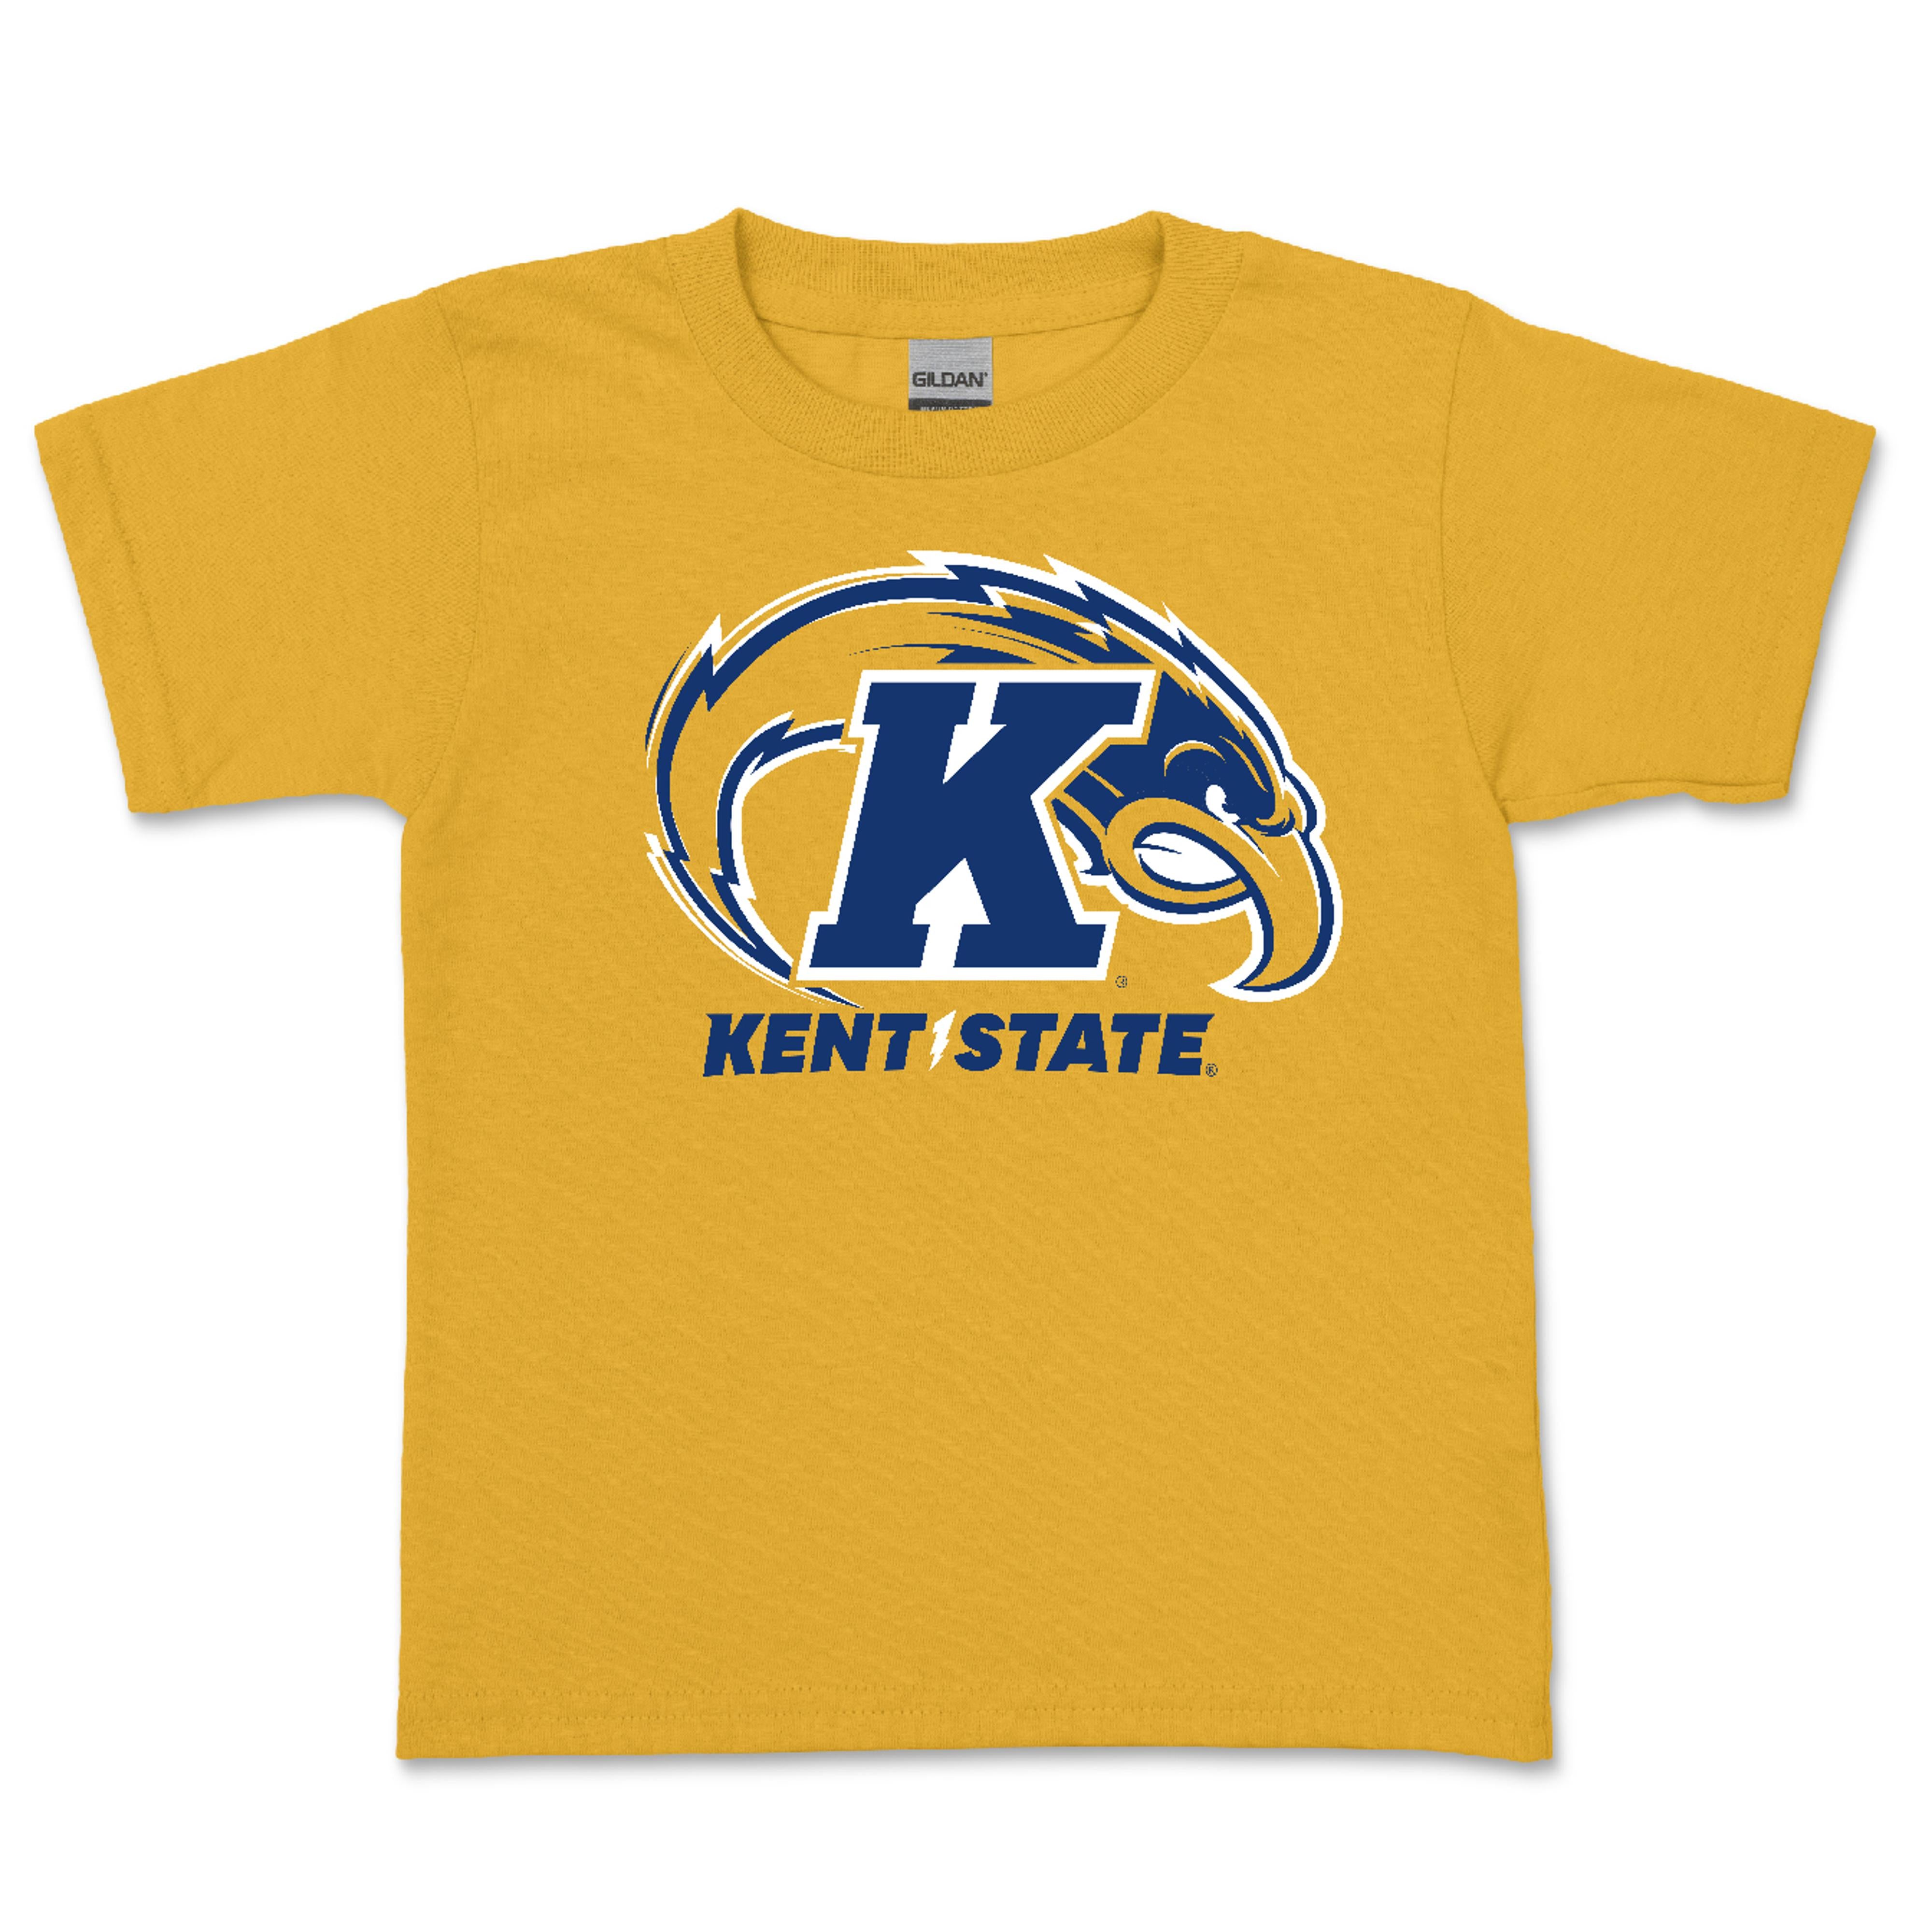 Kent State Gold Toddler T-Shirt